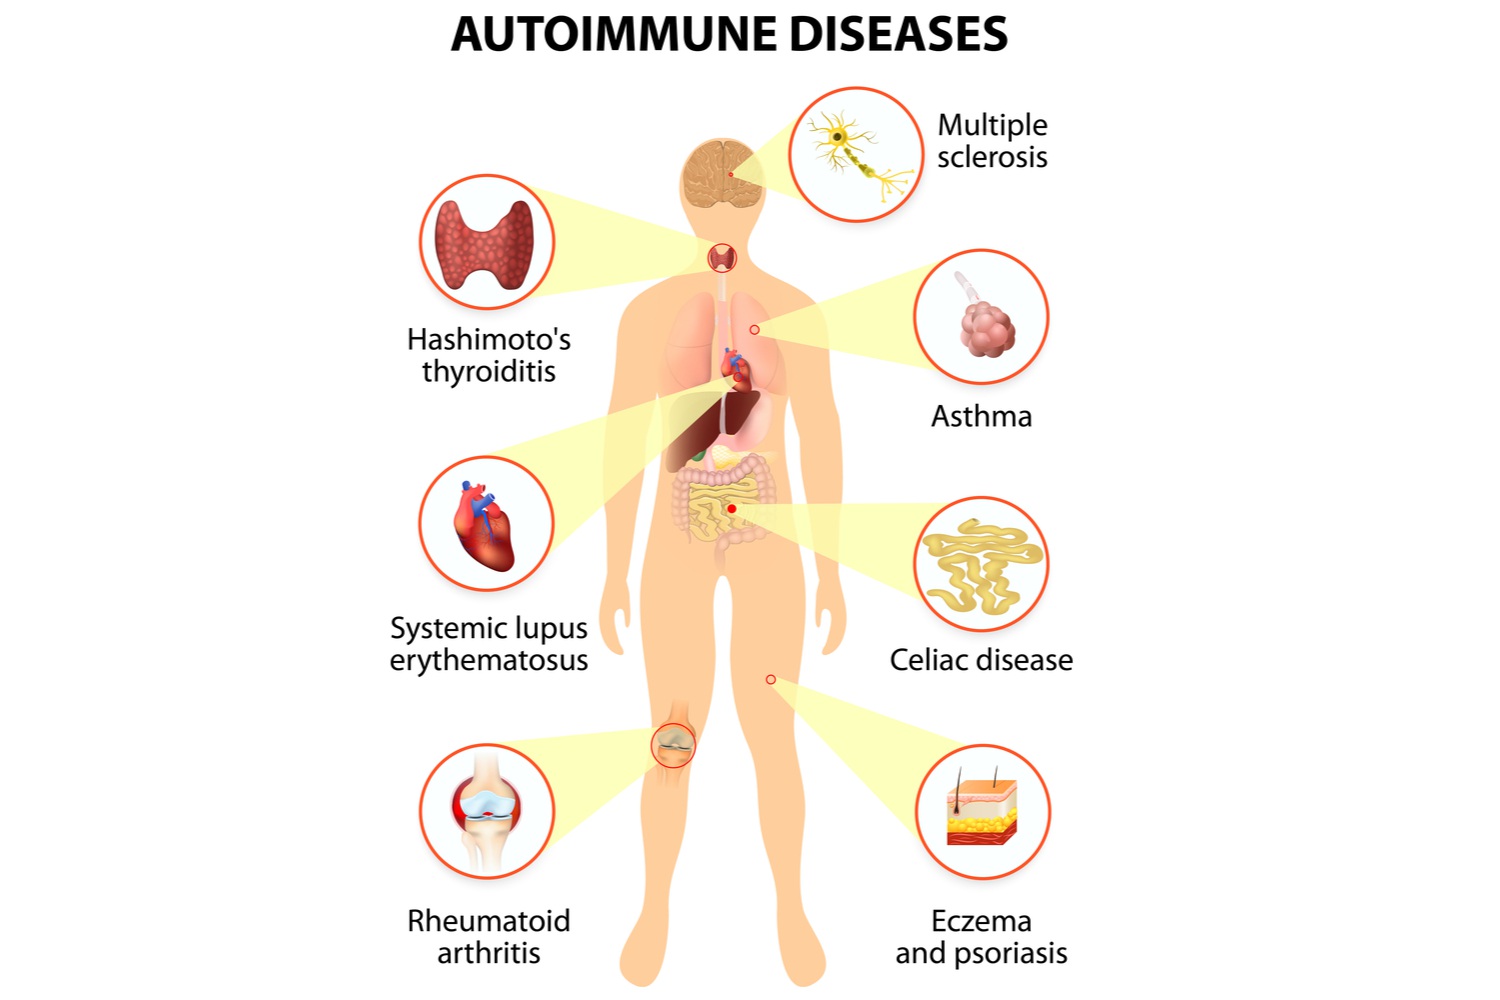 What are Autoimmune Diseases